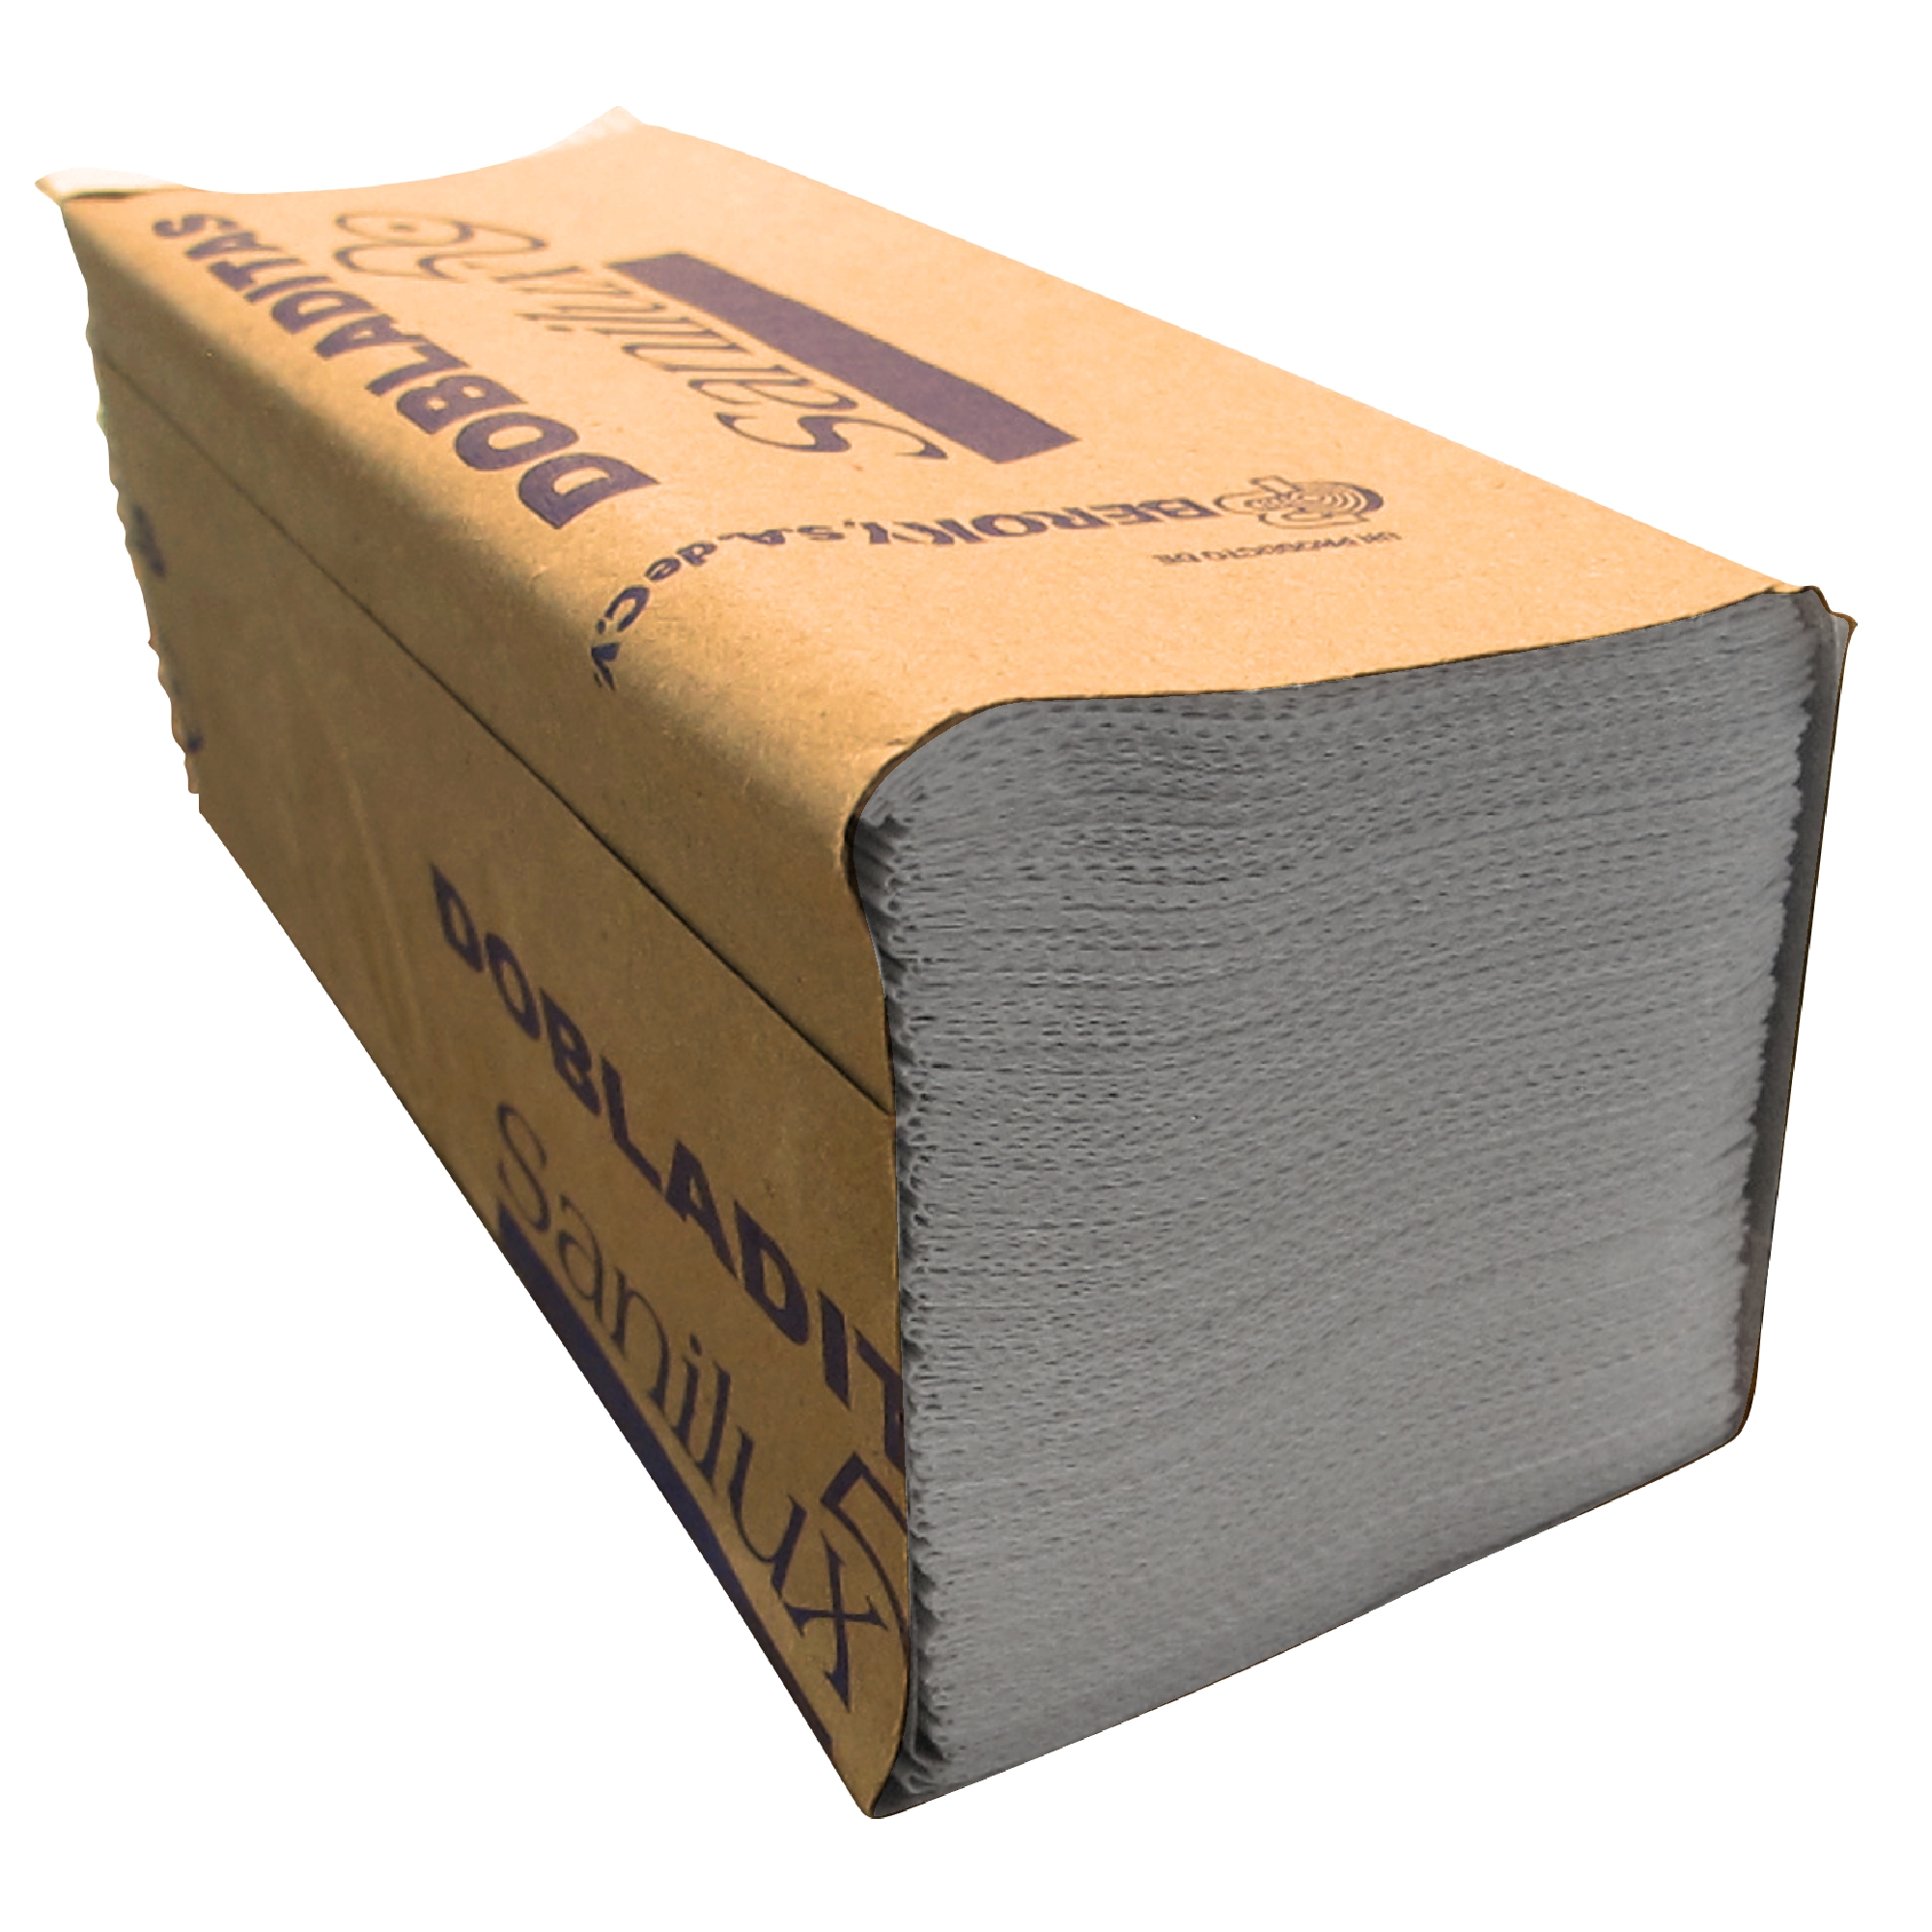 Berocky dobladitas Sanilux Toalla  interdoblada color blanca 22 x 24, caja con 20 paquetes de 100 piezas cada uno